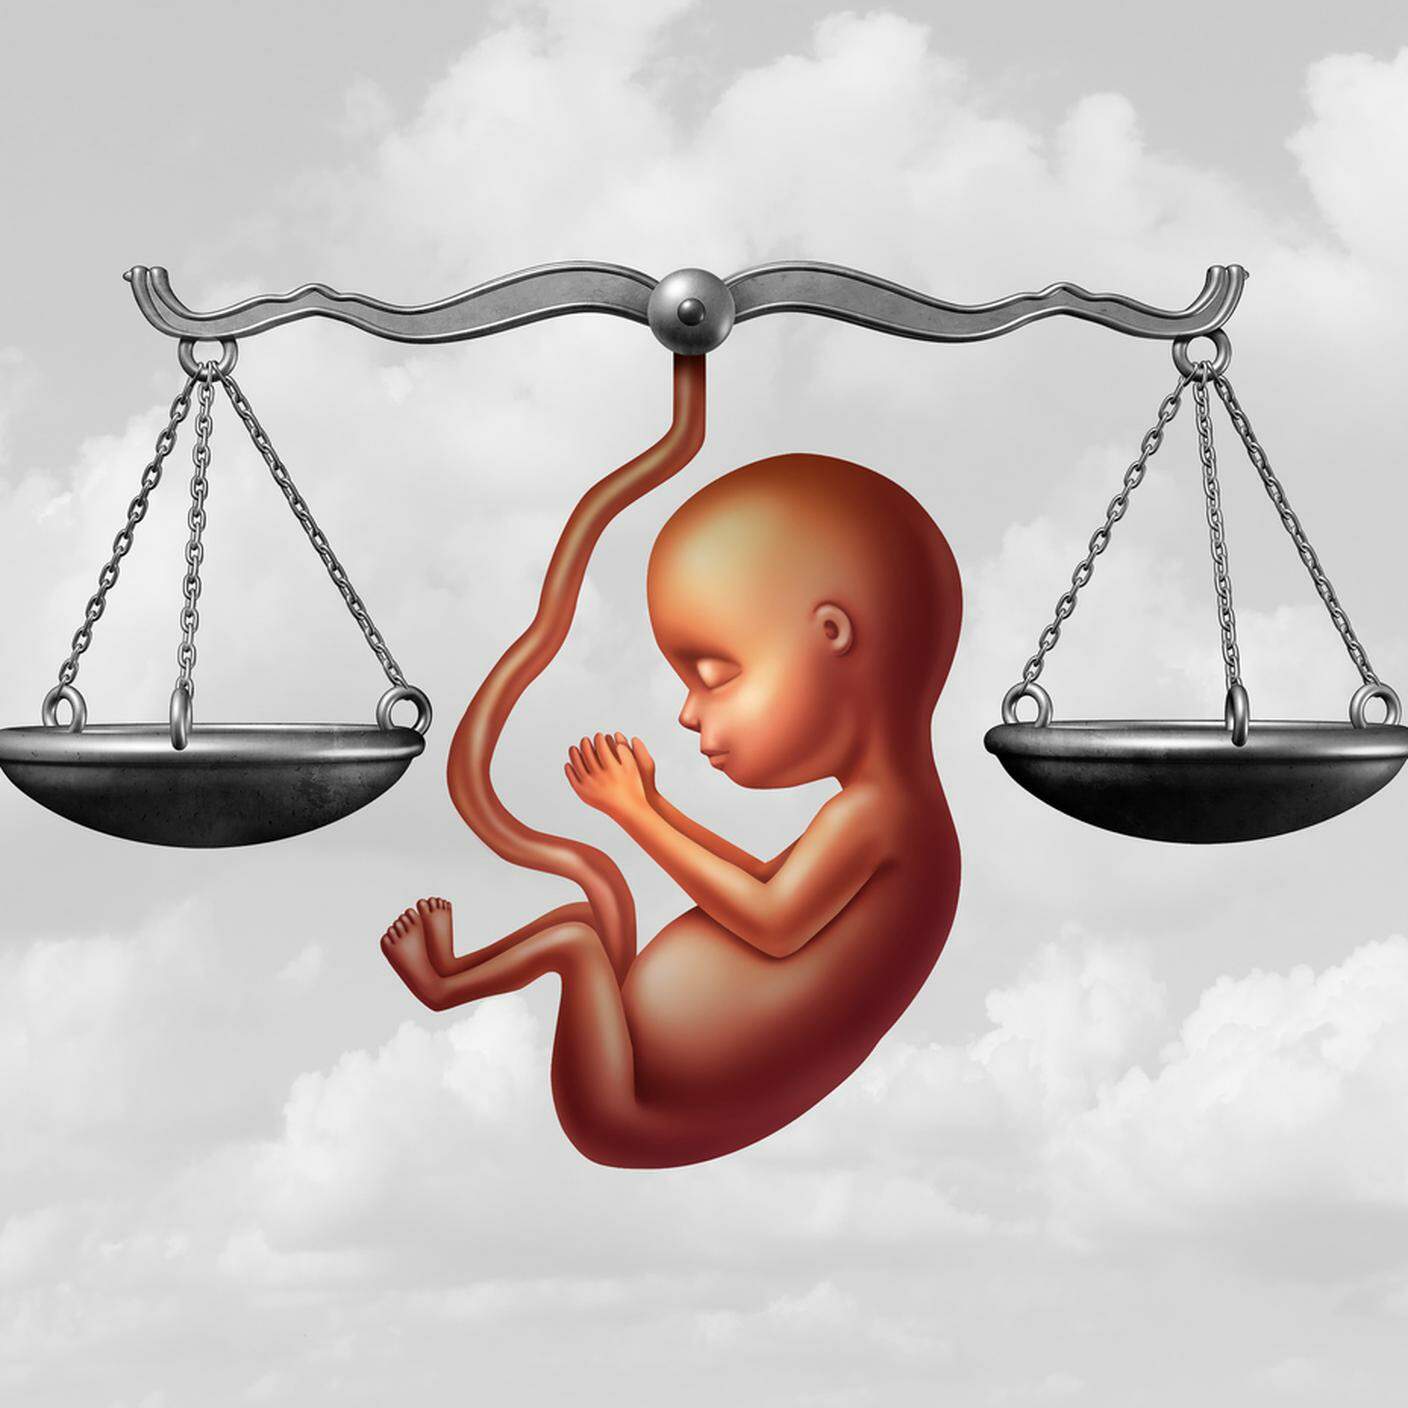 legge sull'aborto